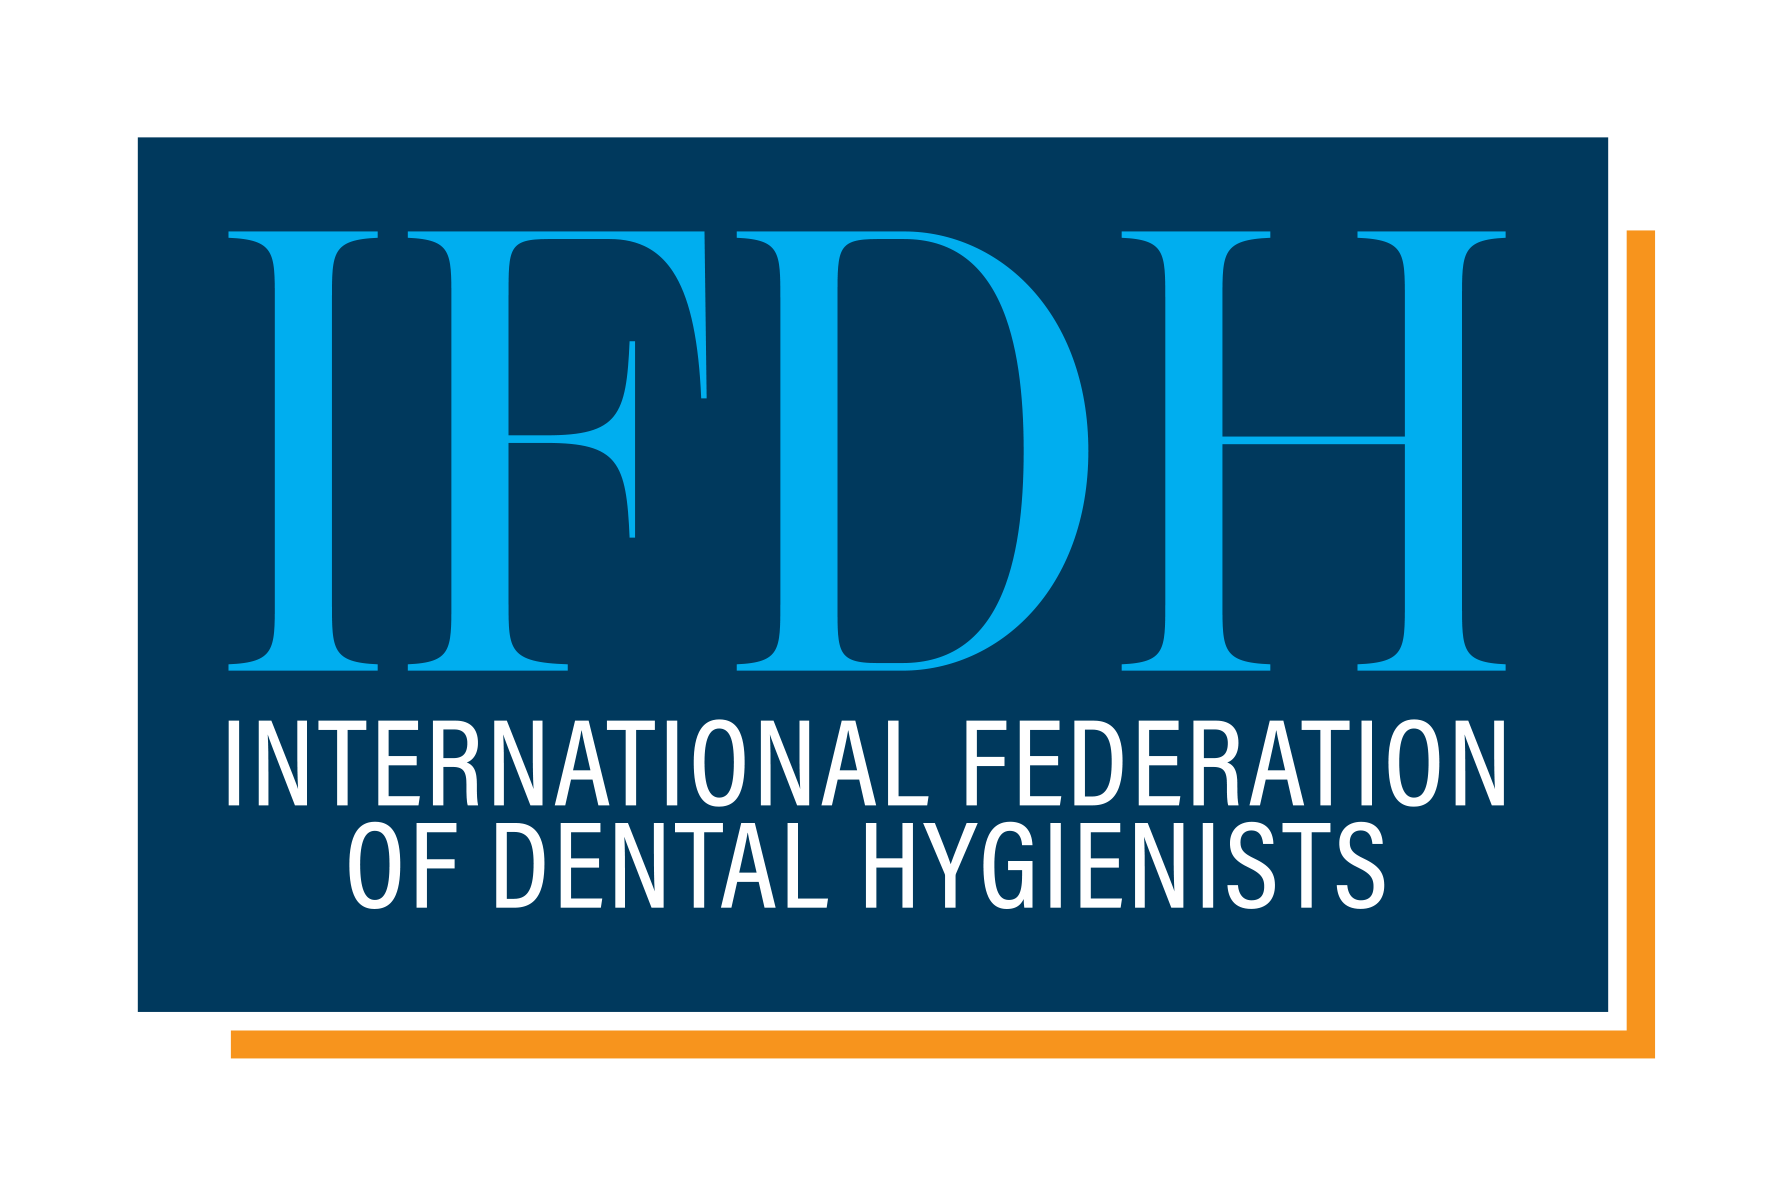 IFDH Internation Federation of Dental Hygienists